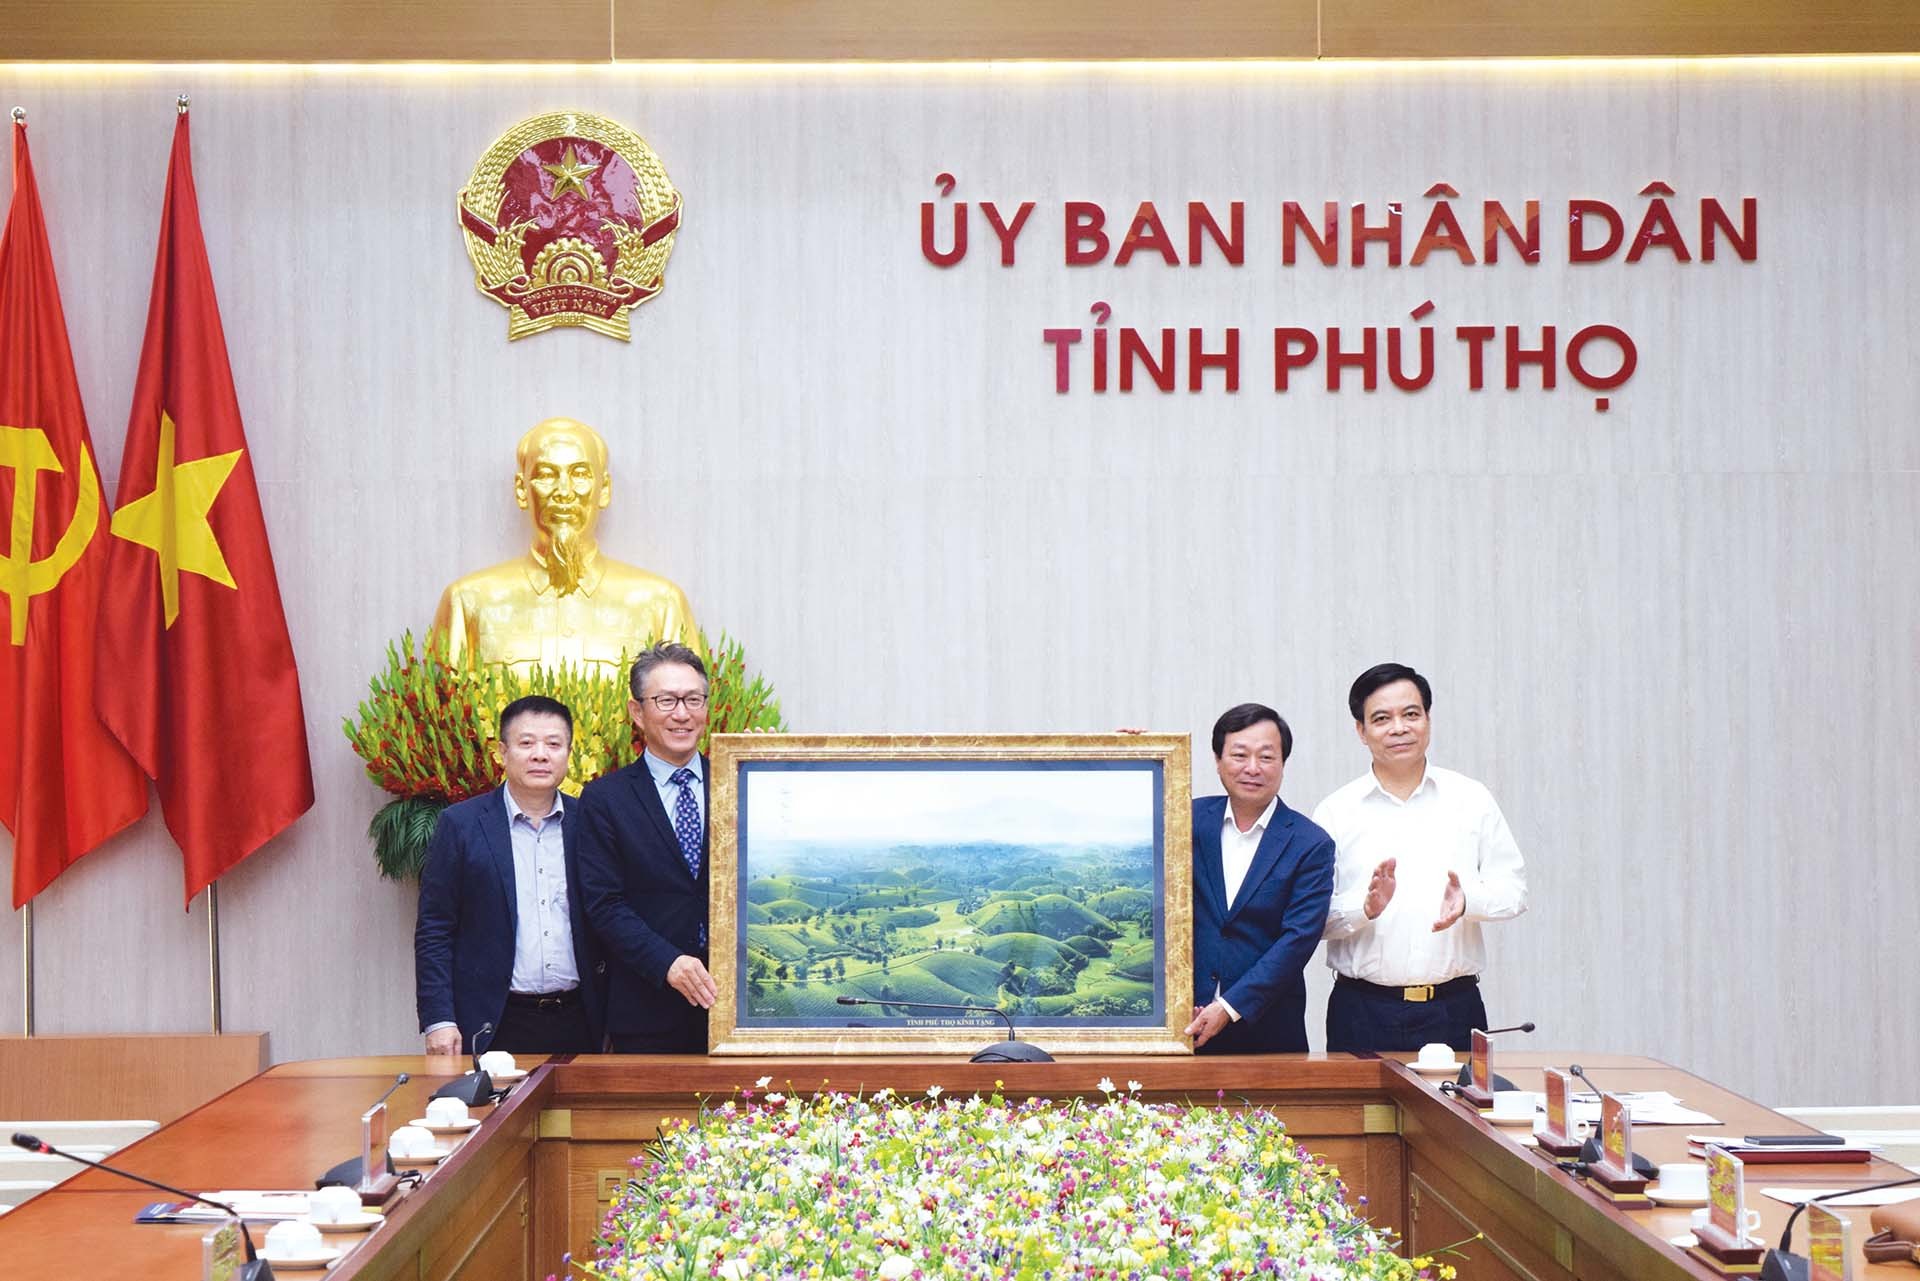 Chủ tịch UBND tỉnh Phú Thọ Bùi Văn Quang tặng bức ảnh Đồi chè Long Cốc cho ông Kinoshita Tadahiro, Tổng giám đốc Công ty Sojitz Việt Nam, thành viên của Tập đoàn Sojitz Nhật Bản.